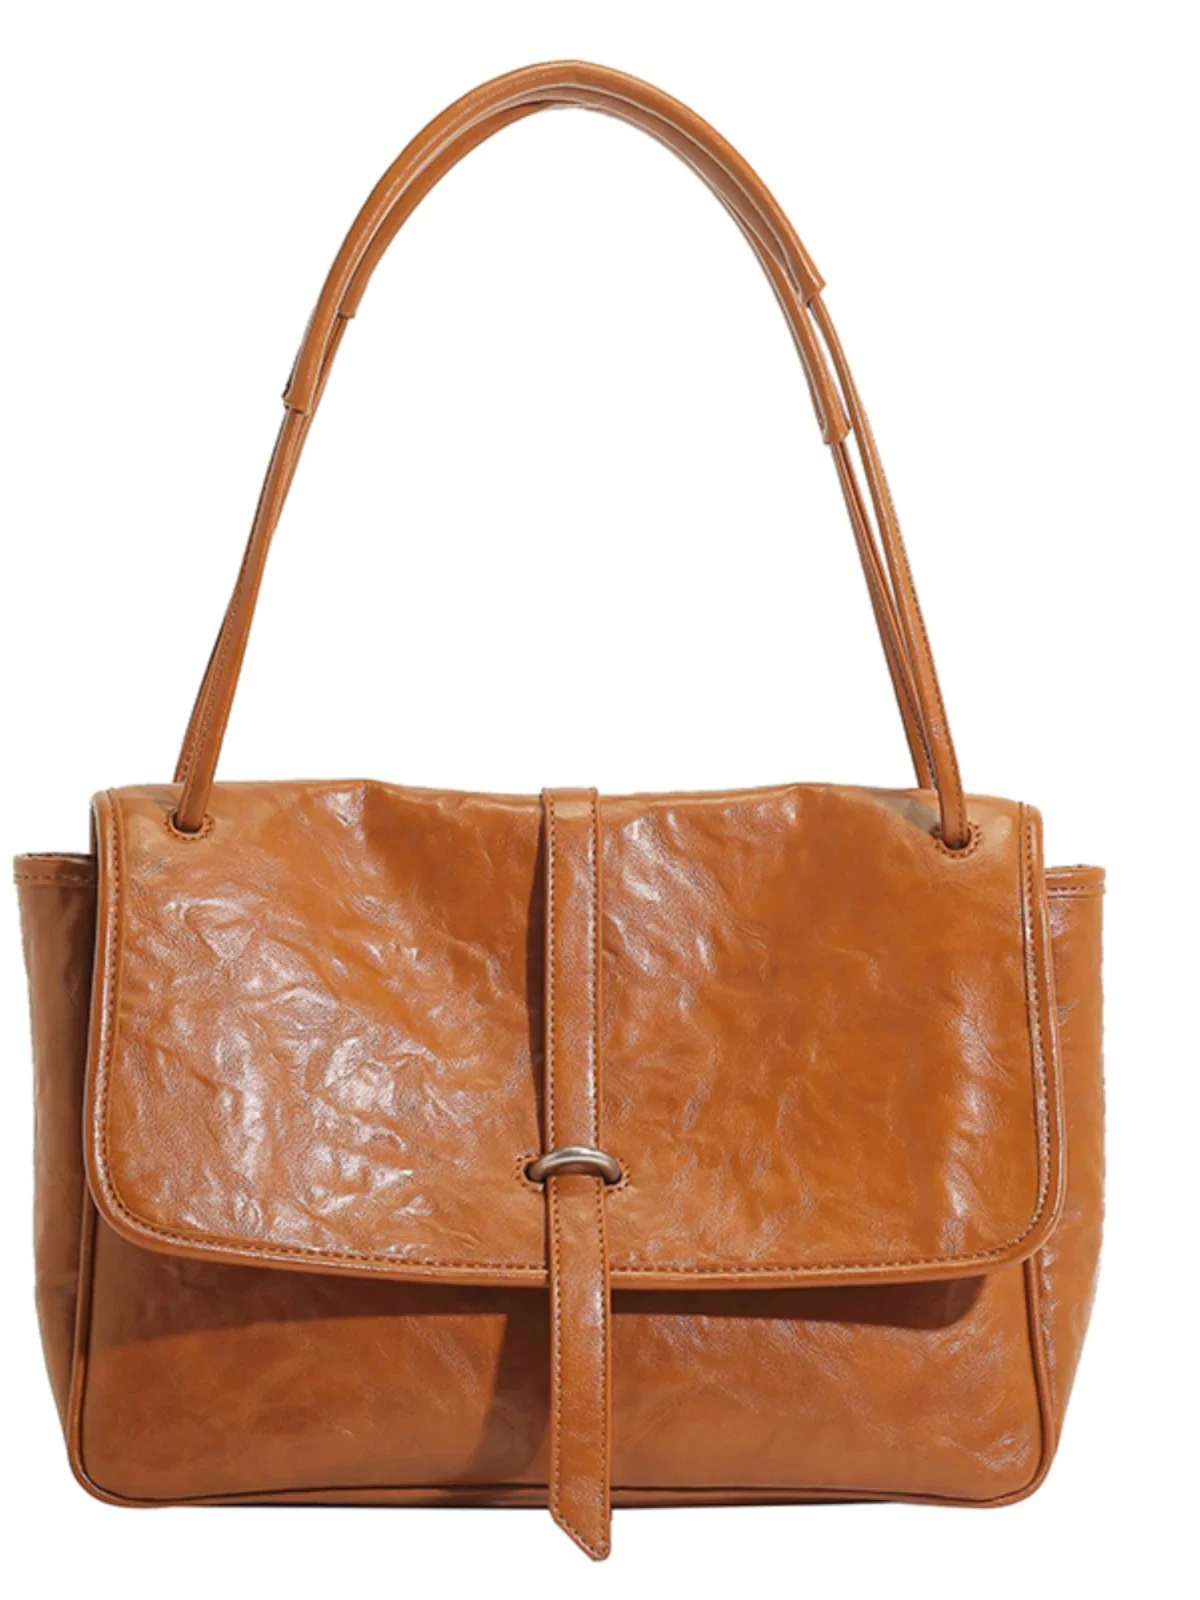 Сумка-мессенджер из кожи растительного дубления, женская сумка через плечо в стиле ретро для пригородных поездок0